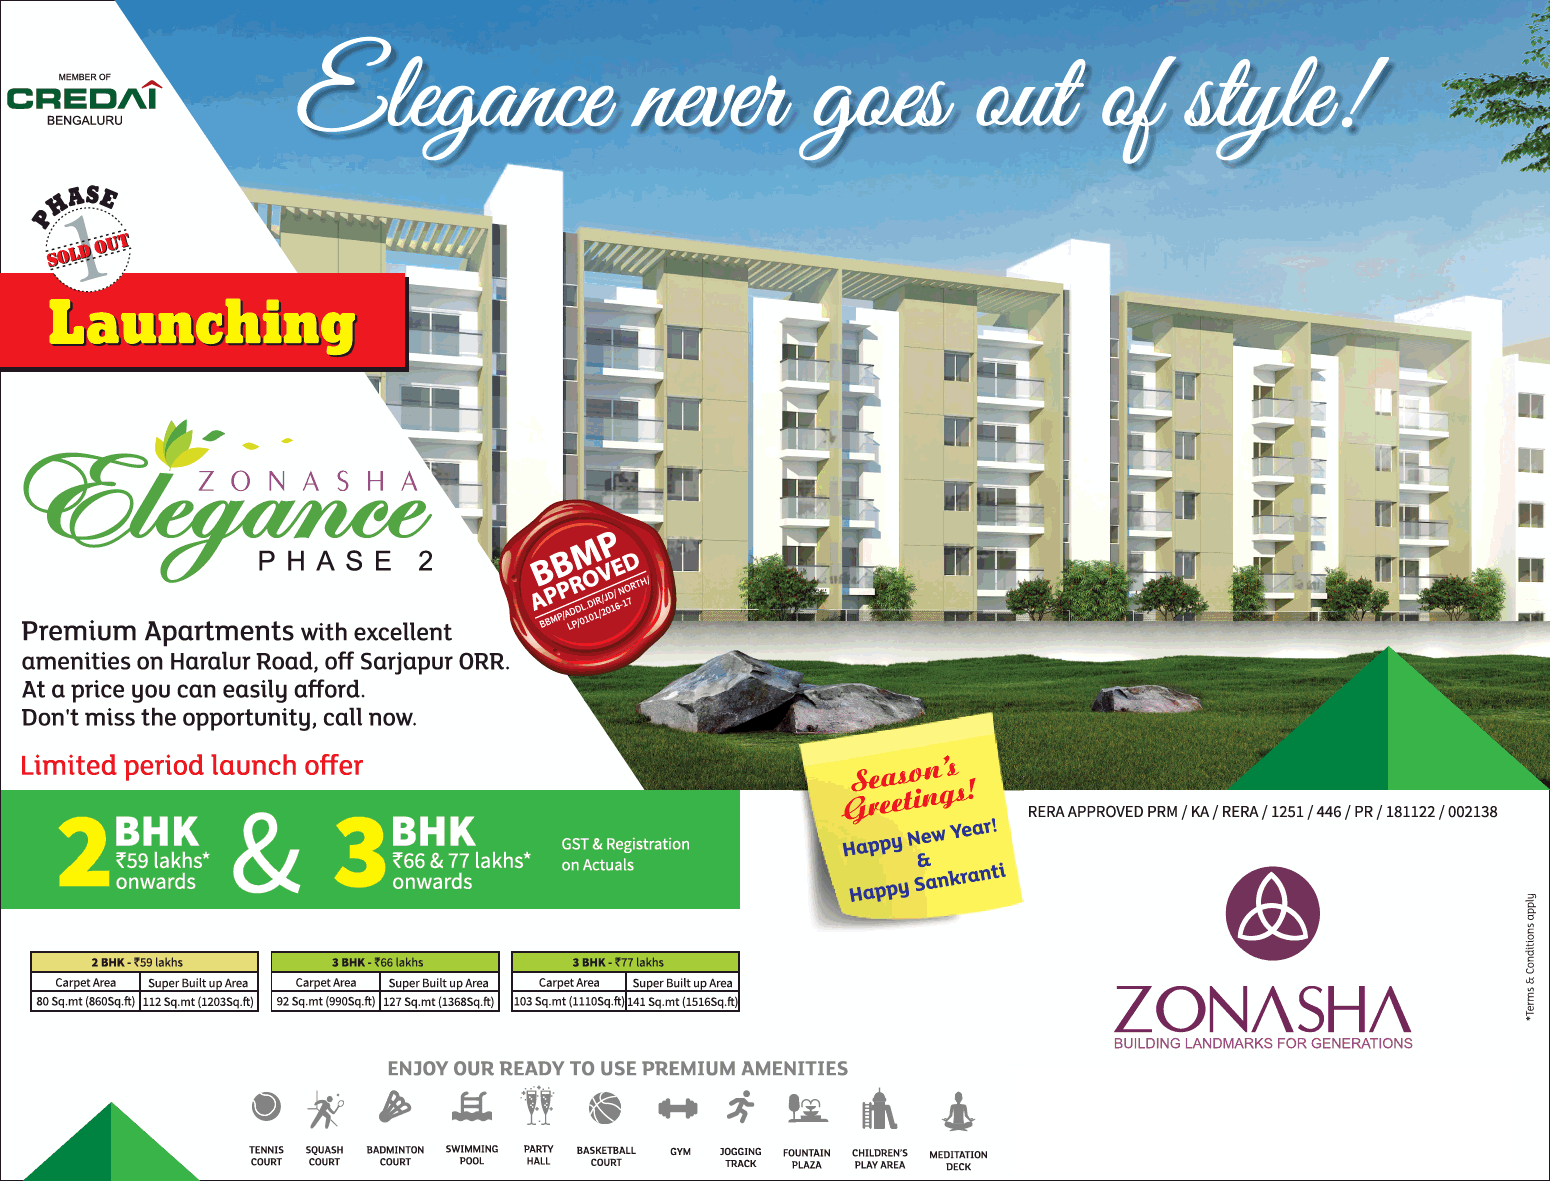 Zonasha launching 2 & 3 bhk at Elegance Phase 2 in Bangalore